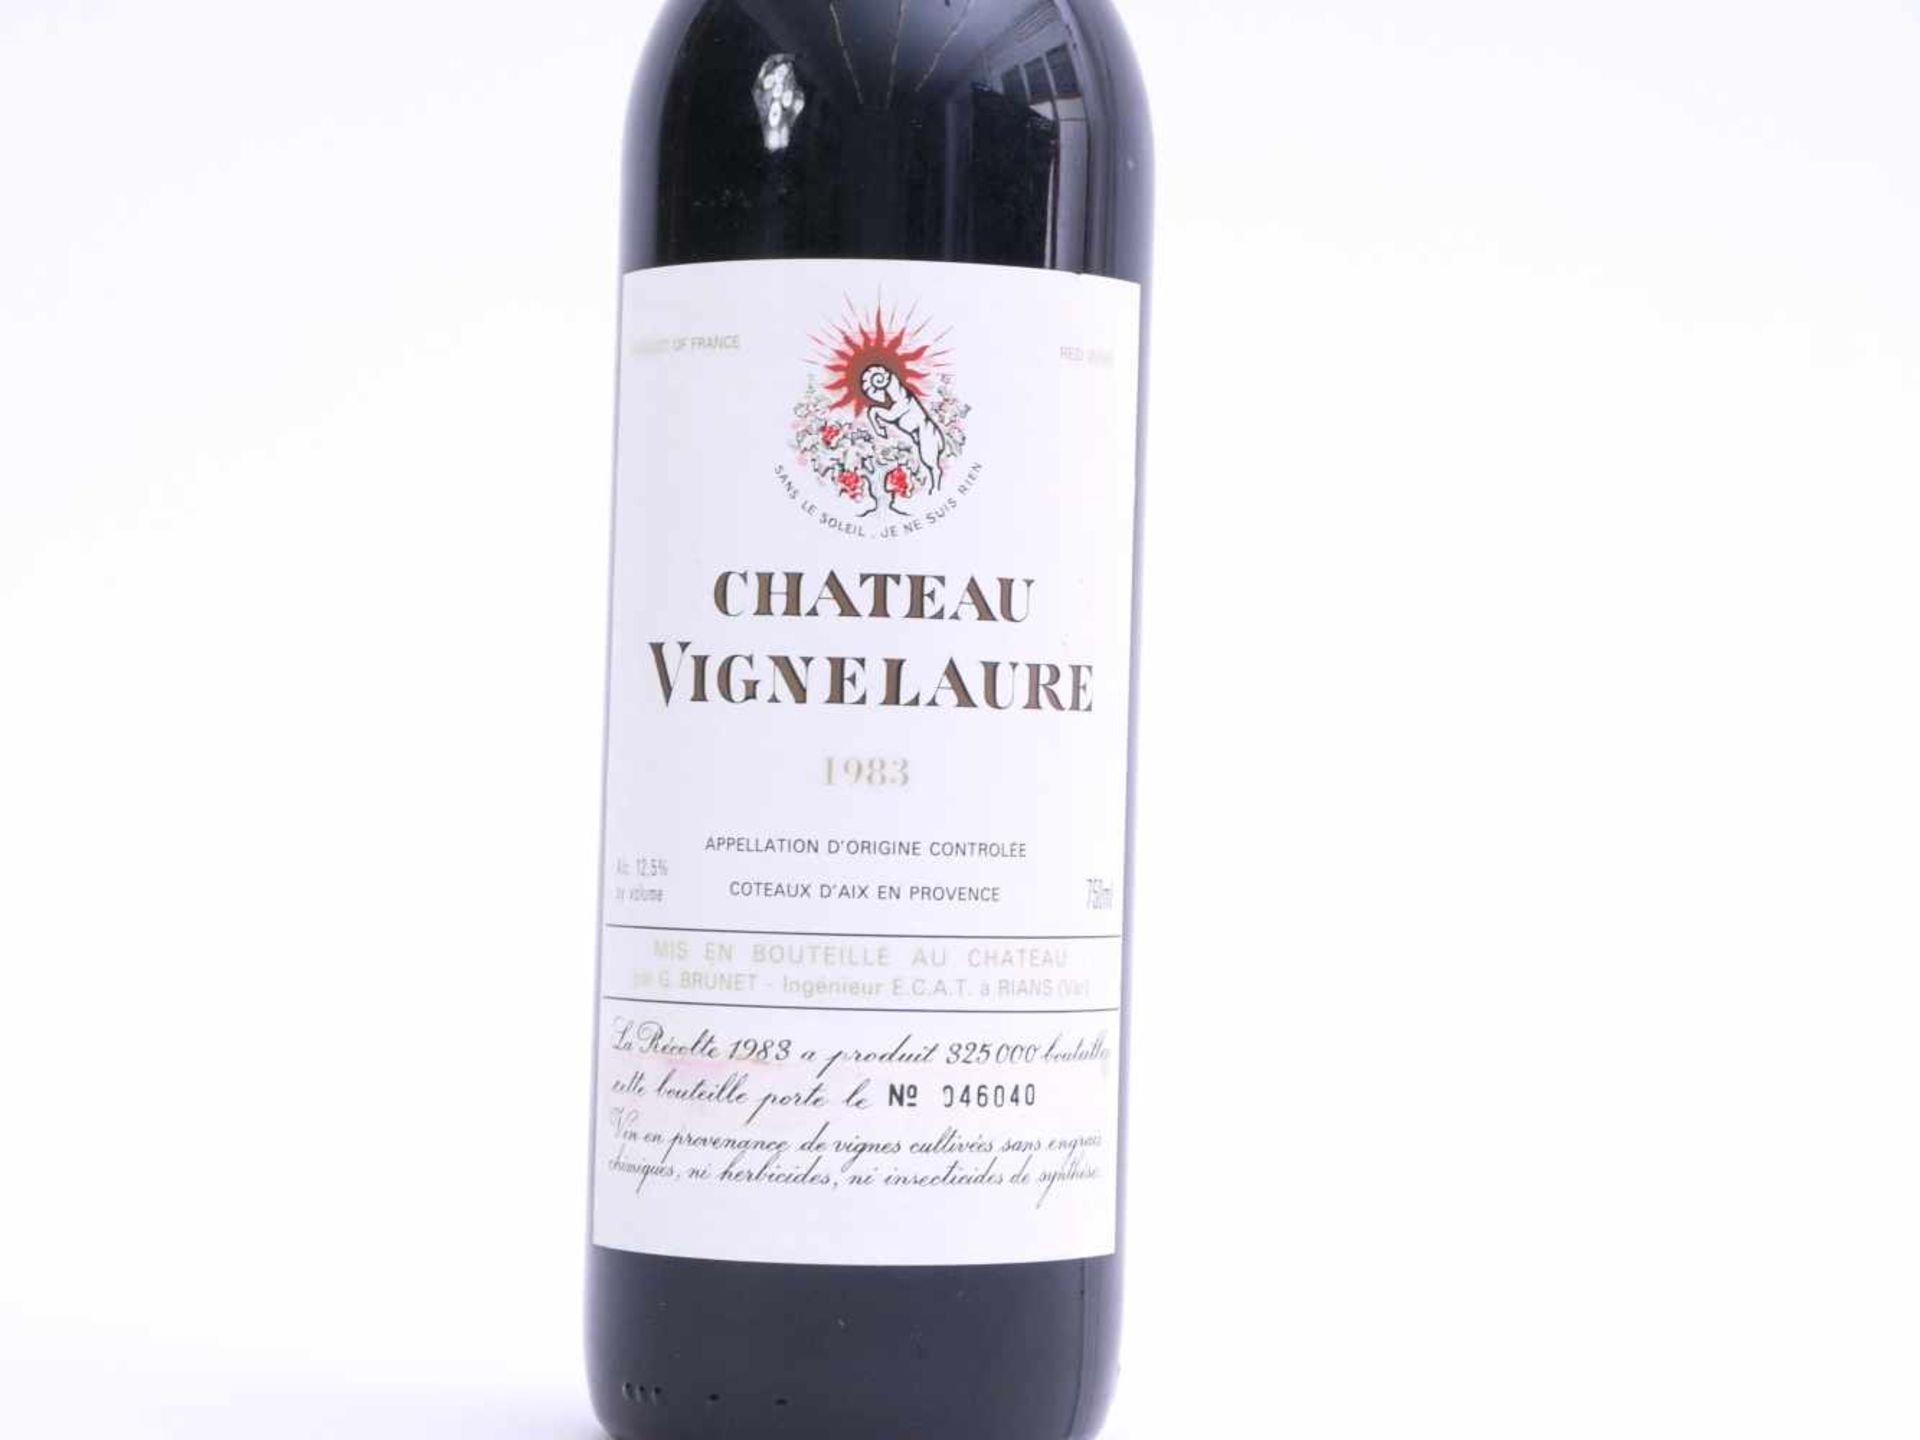 Flasche Rotwein Chateau Vignelaure 1983Nummeriertes Exemplar 046040 von 325000 gesamt abgefüllten - Image 2 of 3